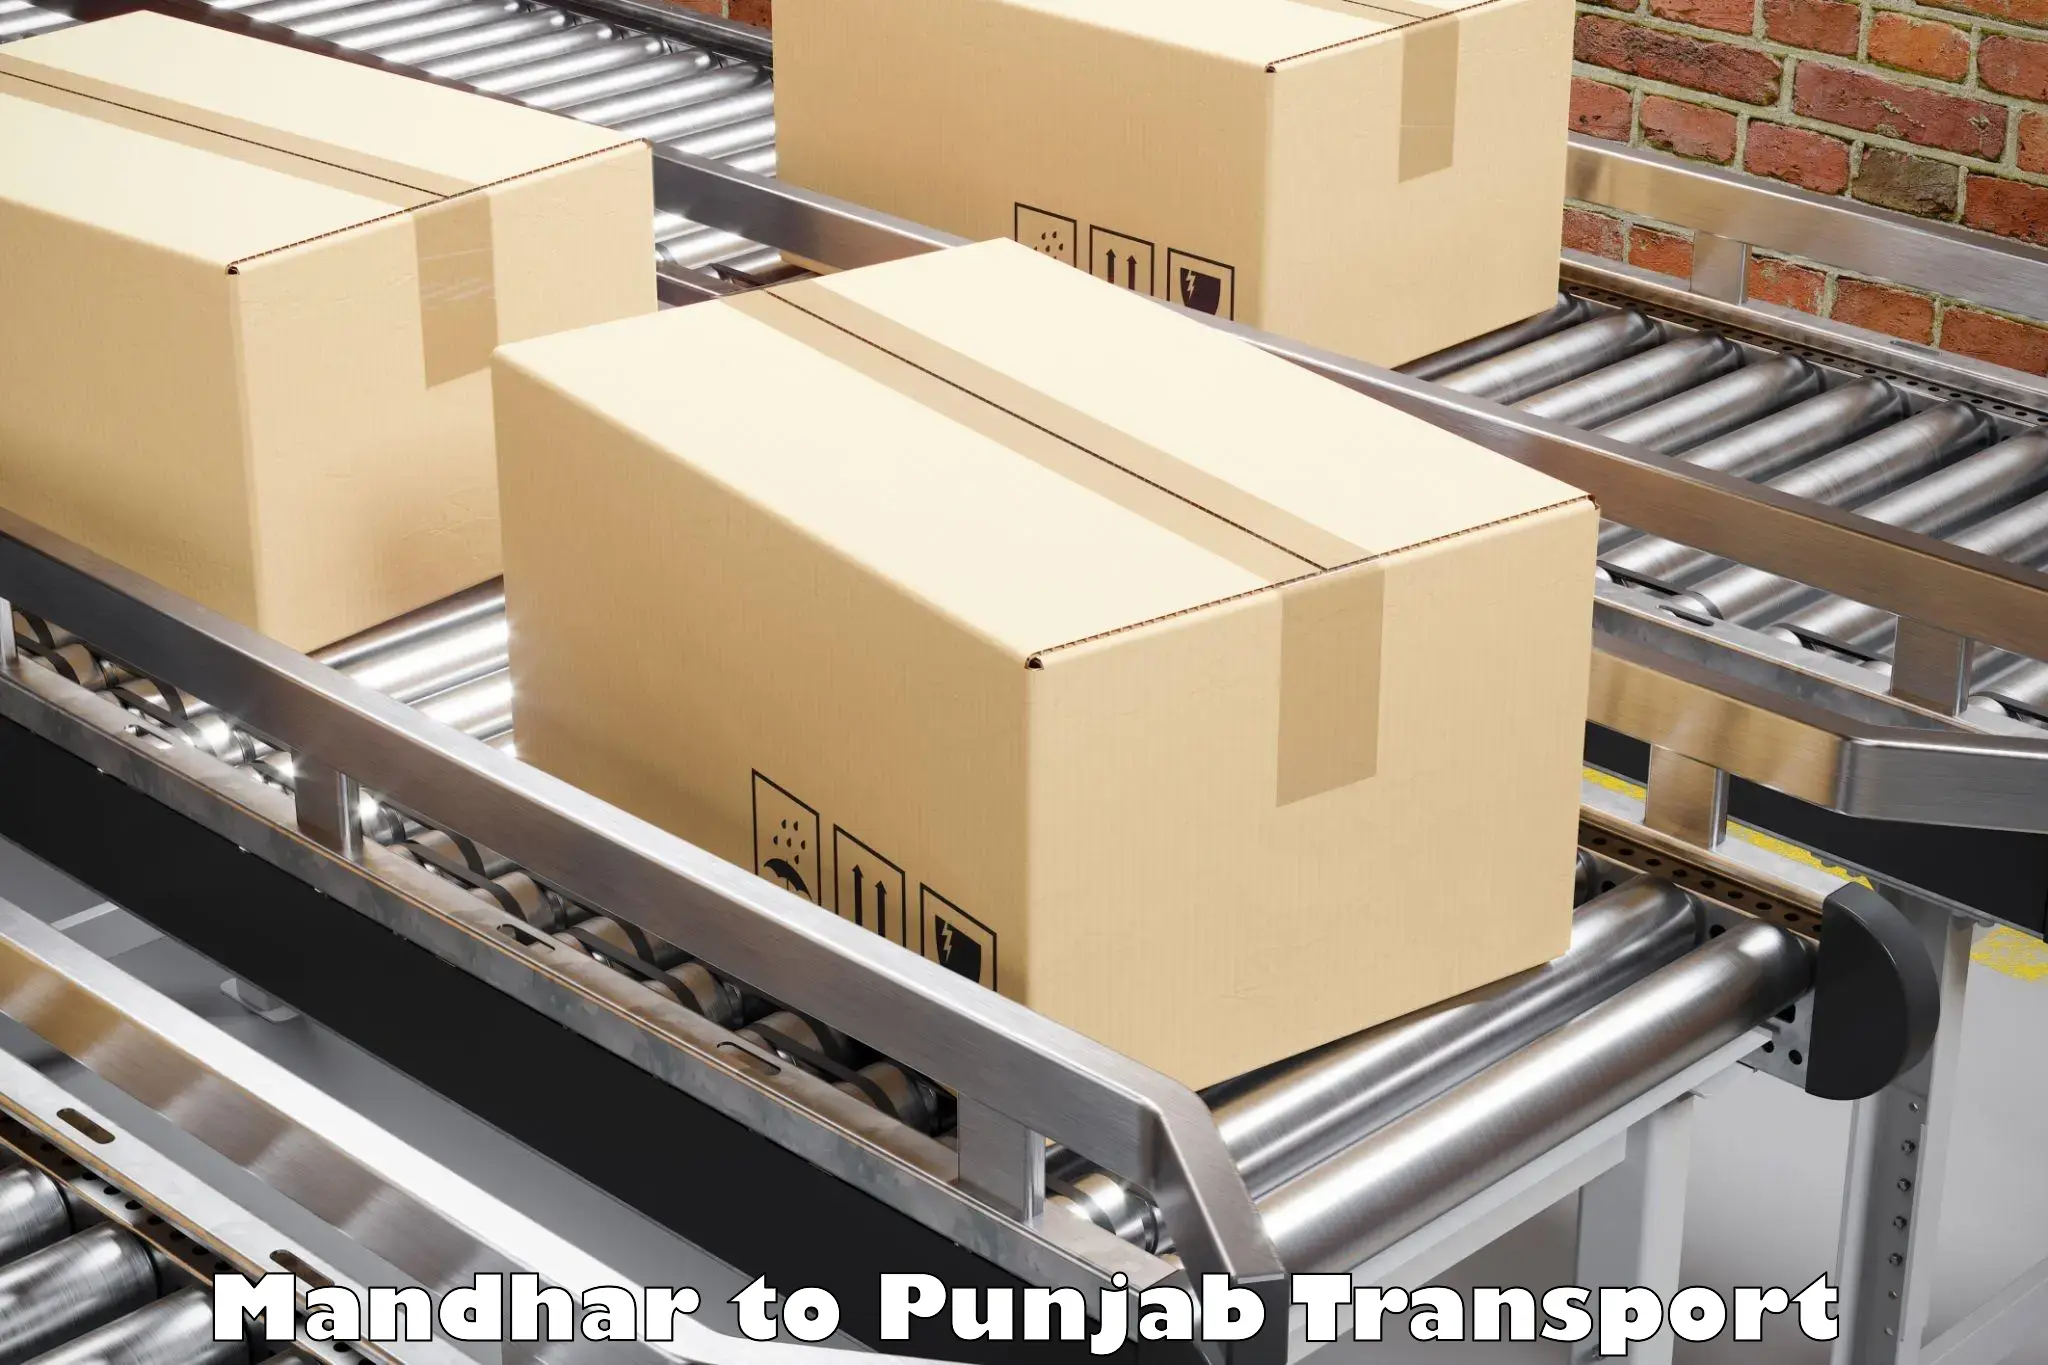 Goods delivery service Mandhar to Sangrur